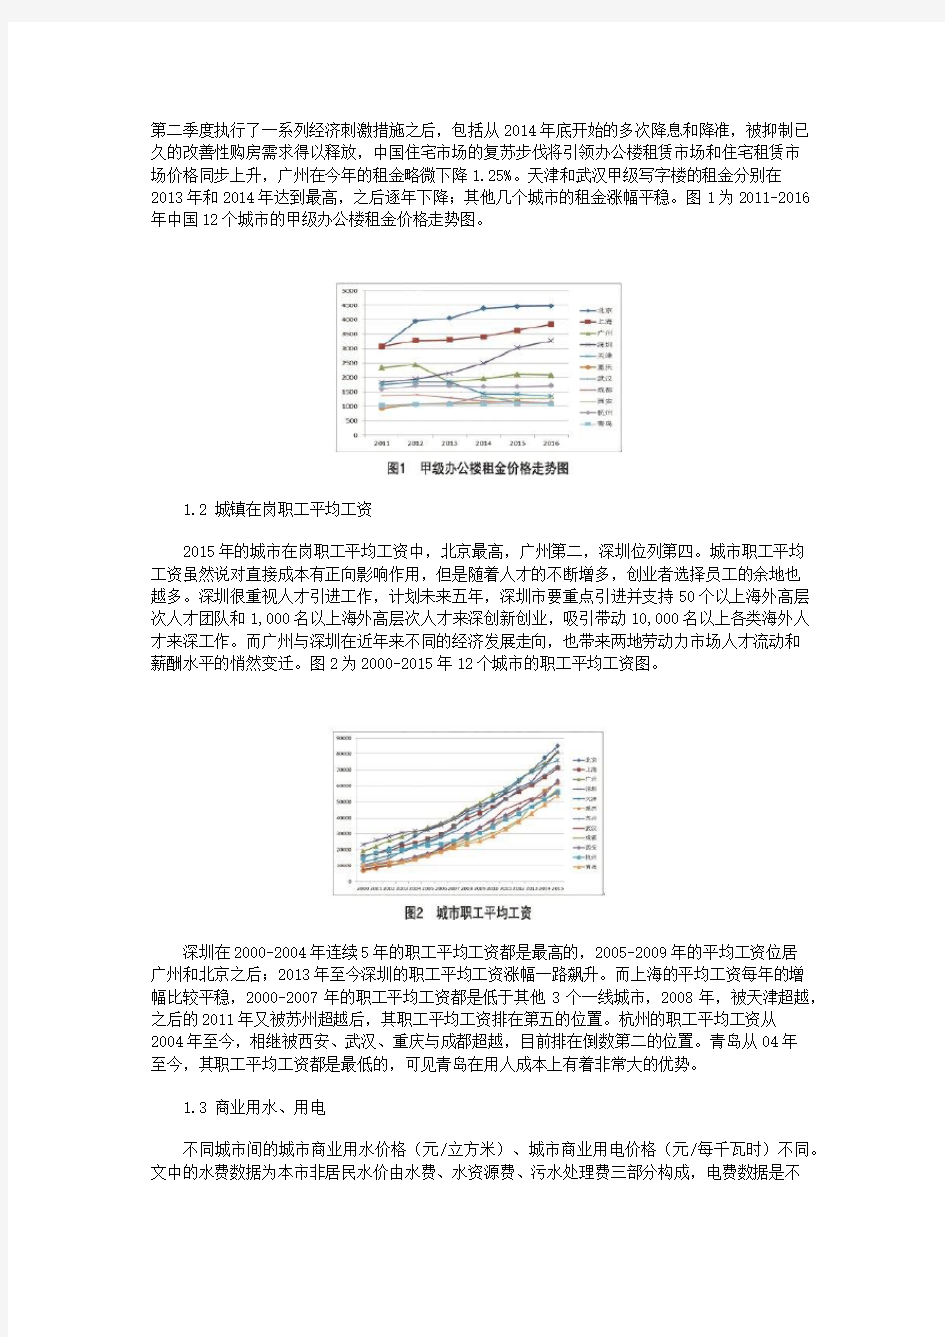 深圳与国内其他主要城市创业成本比较研究